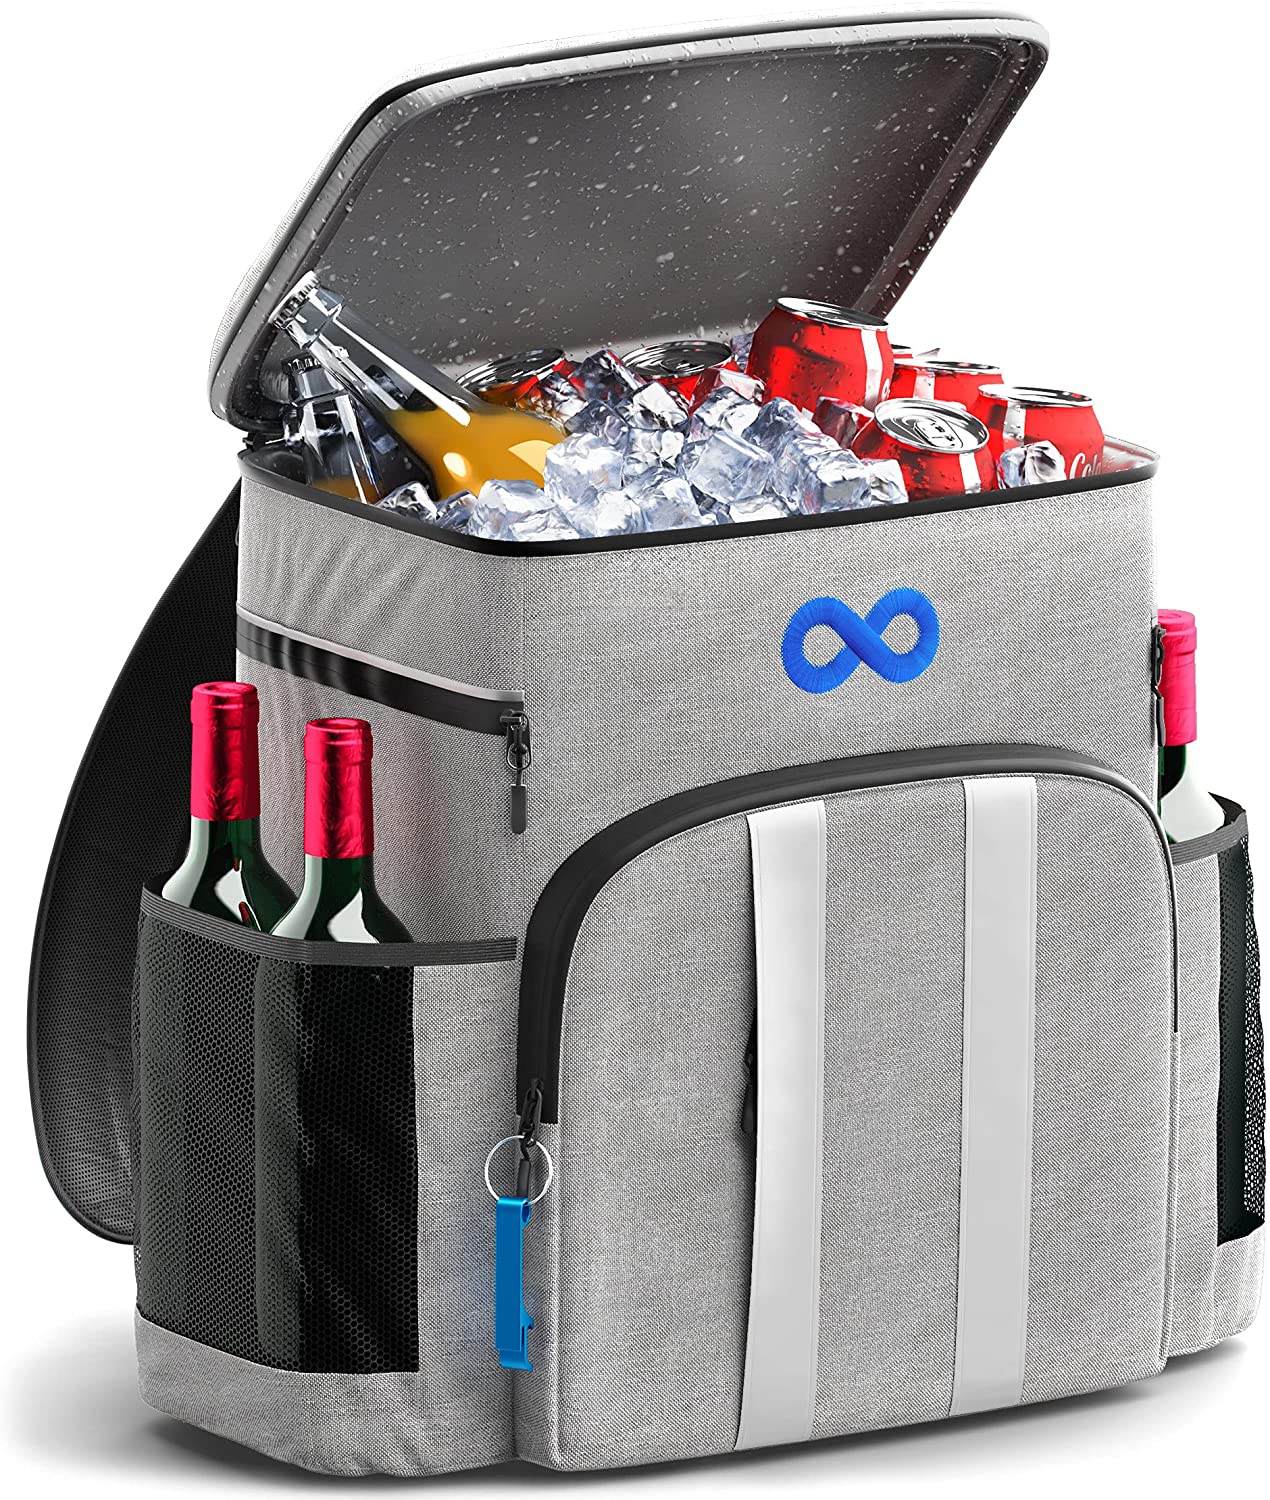 Everlasting Comfort Reflective Stripes Adjustable Backpack Cooler